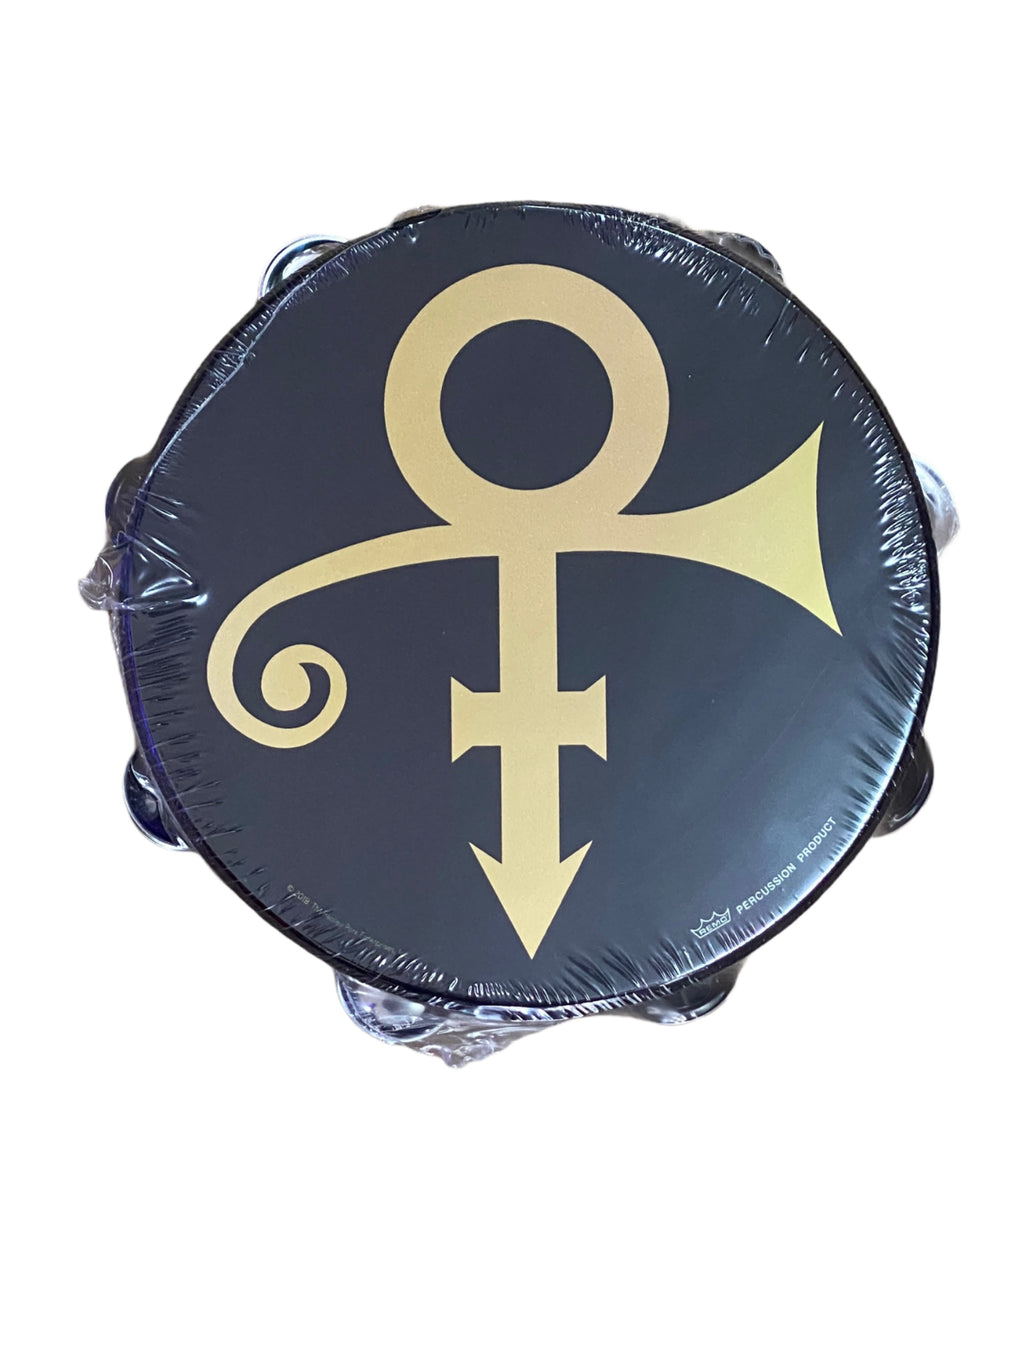 ご注意ください プリンス シンボル タンバリン/Prince Symbol